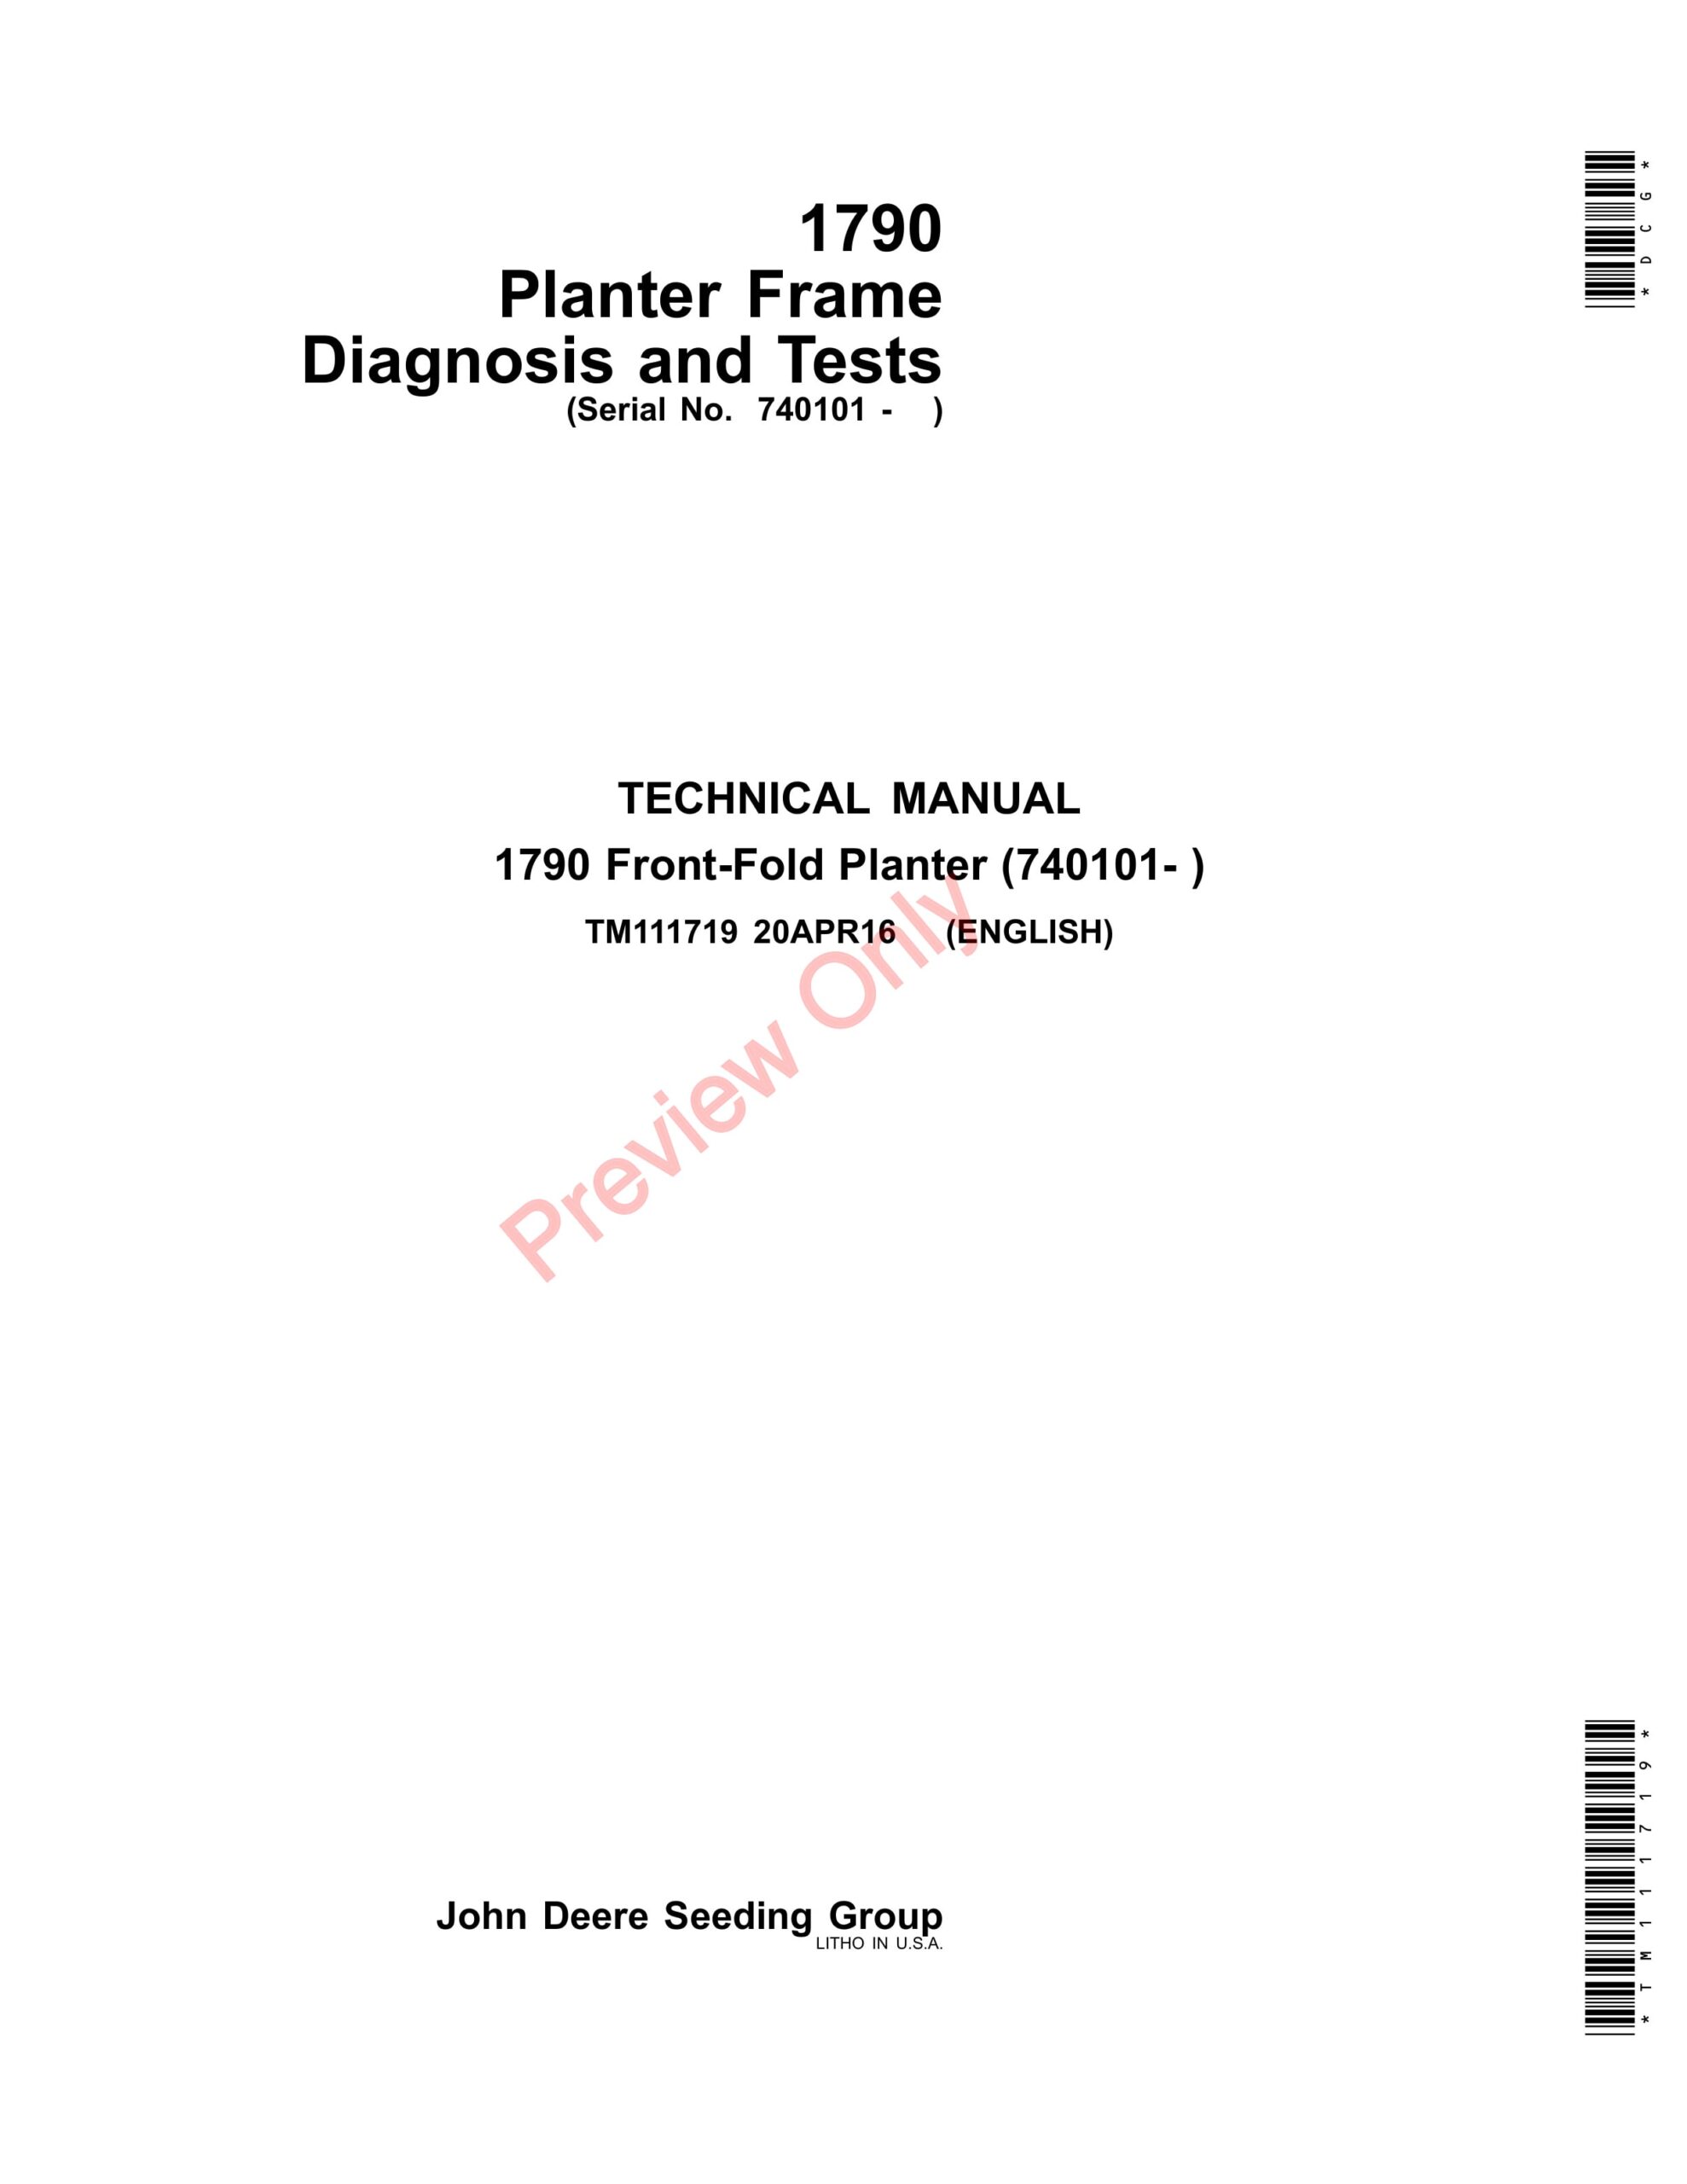 John Deere 1790 Planter Frame (740101-) Technical Manual TM111719 20APR16-1